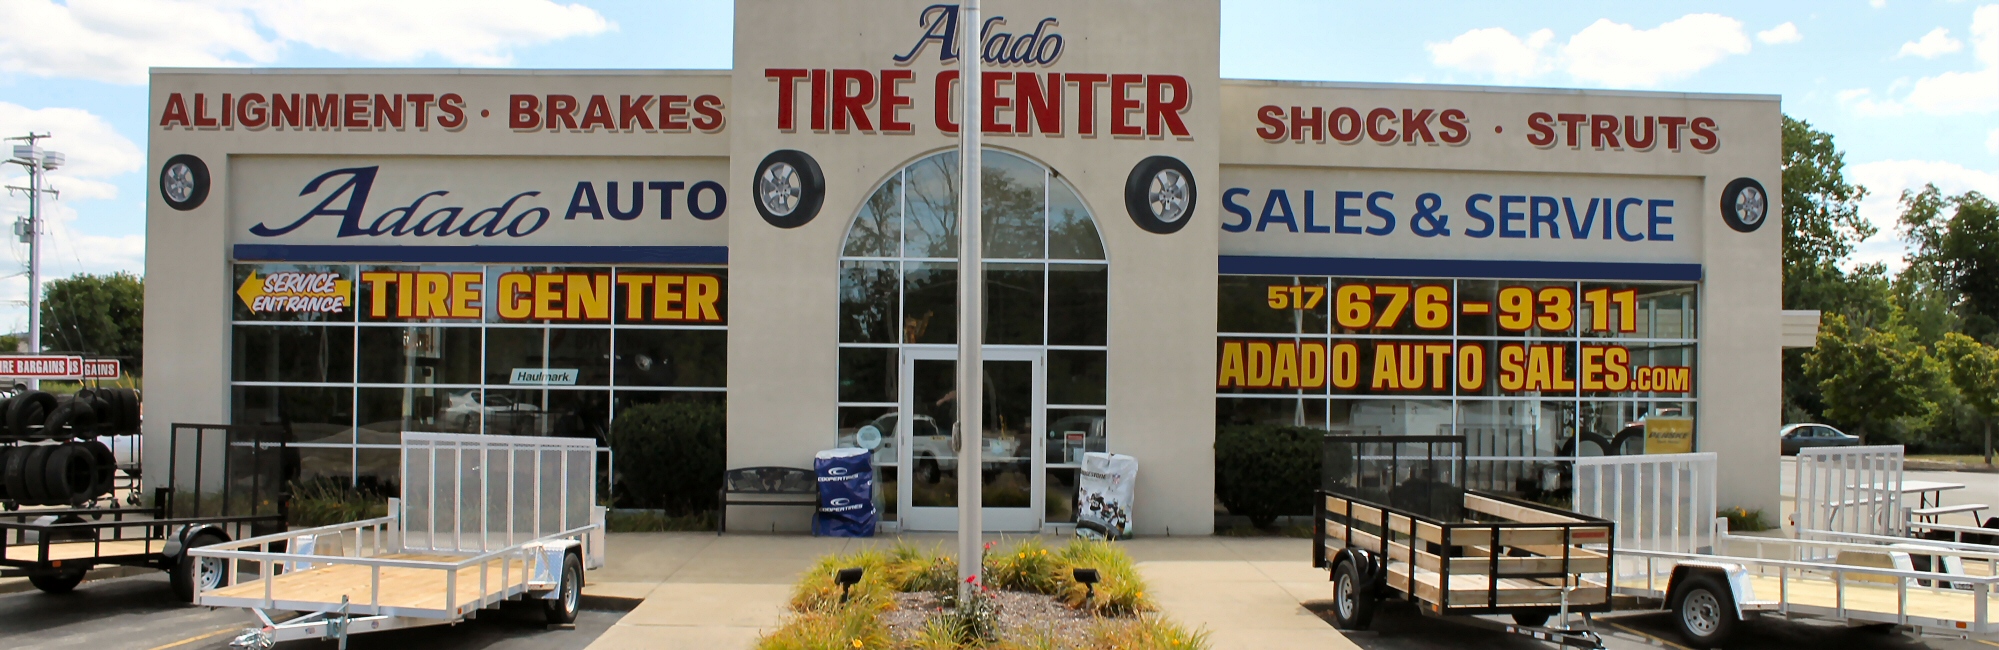 Adado Sales - Trailer Sales - Tires & Service